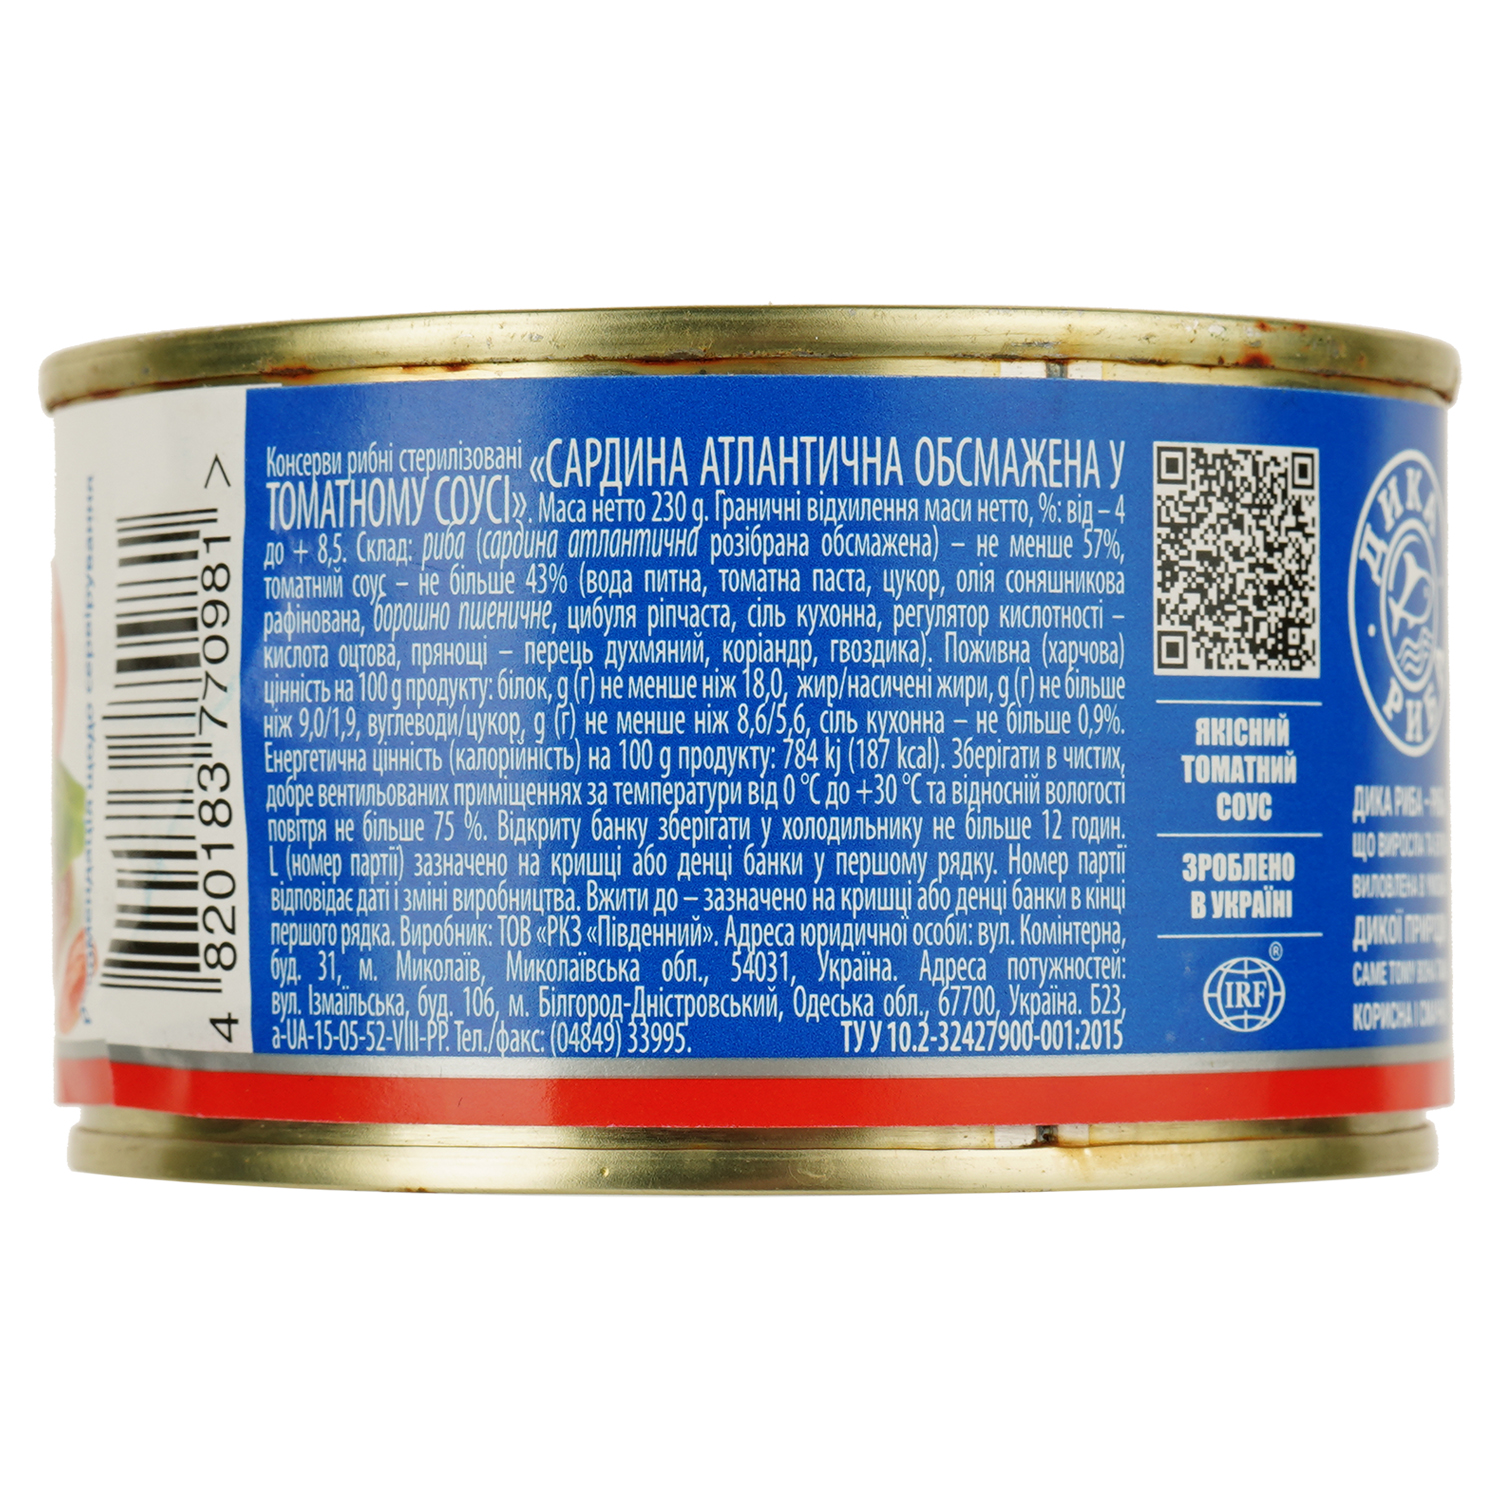 Сардины в томатном соусе Аквамарин обжаренная 230 г (614580) - фото 2